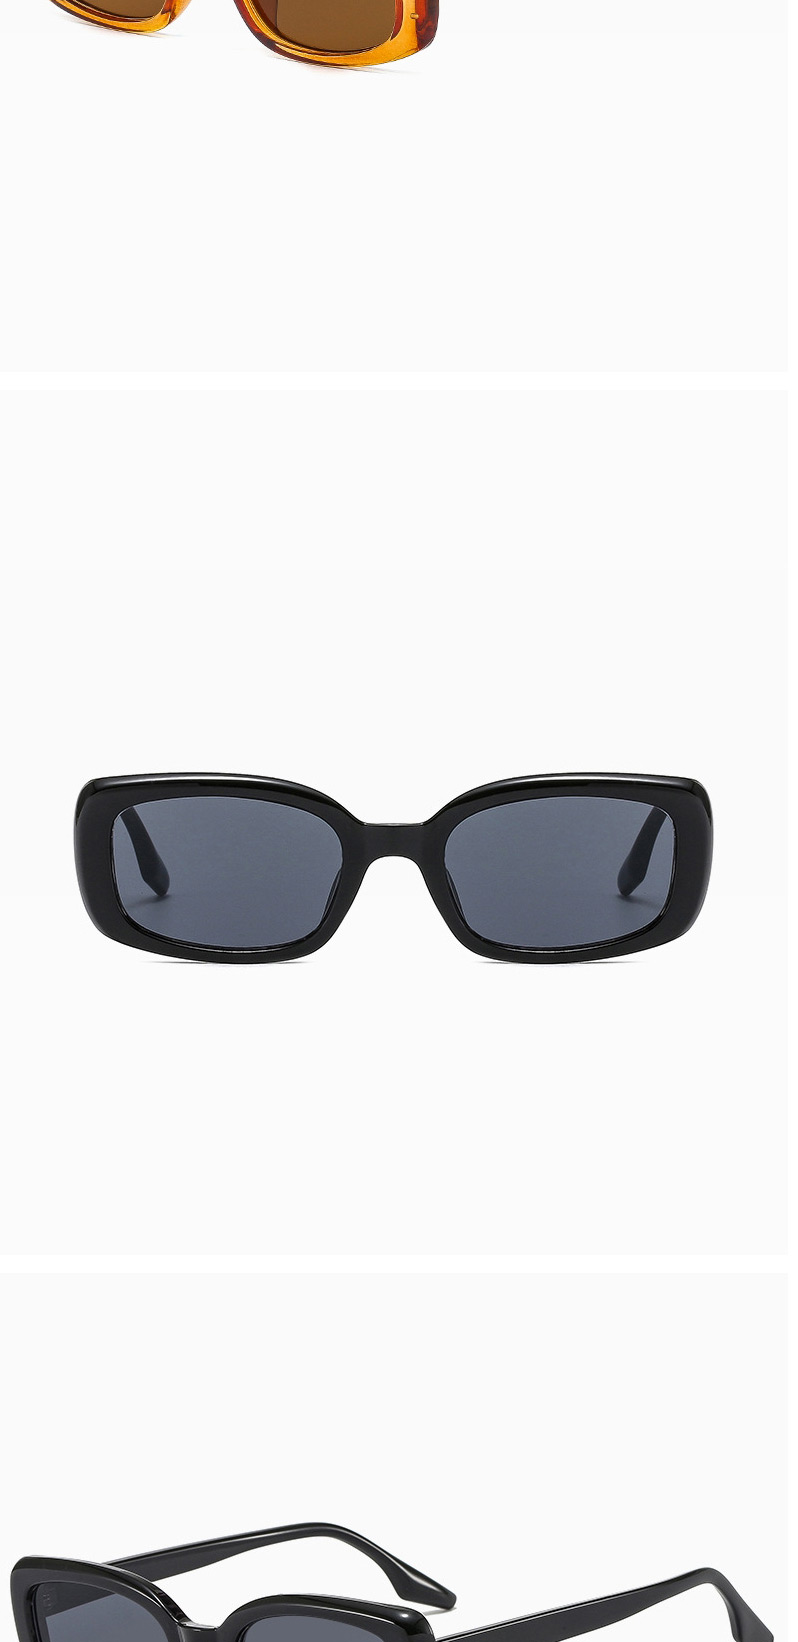 Fashion Bright Black All Gray Square Shade Sunglasses,Women Sunglasses